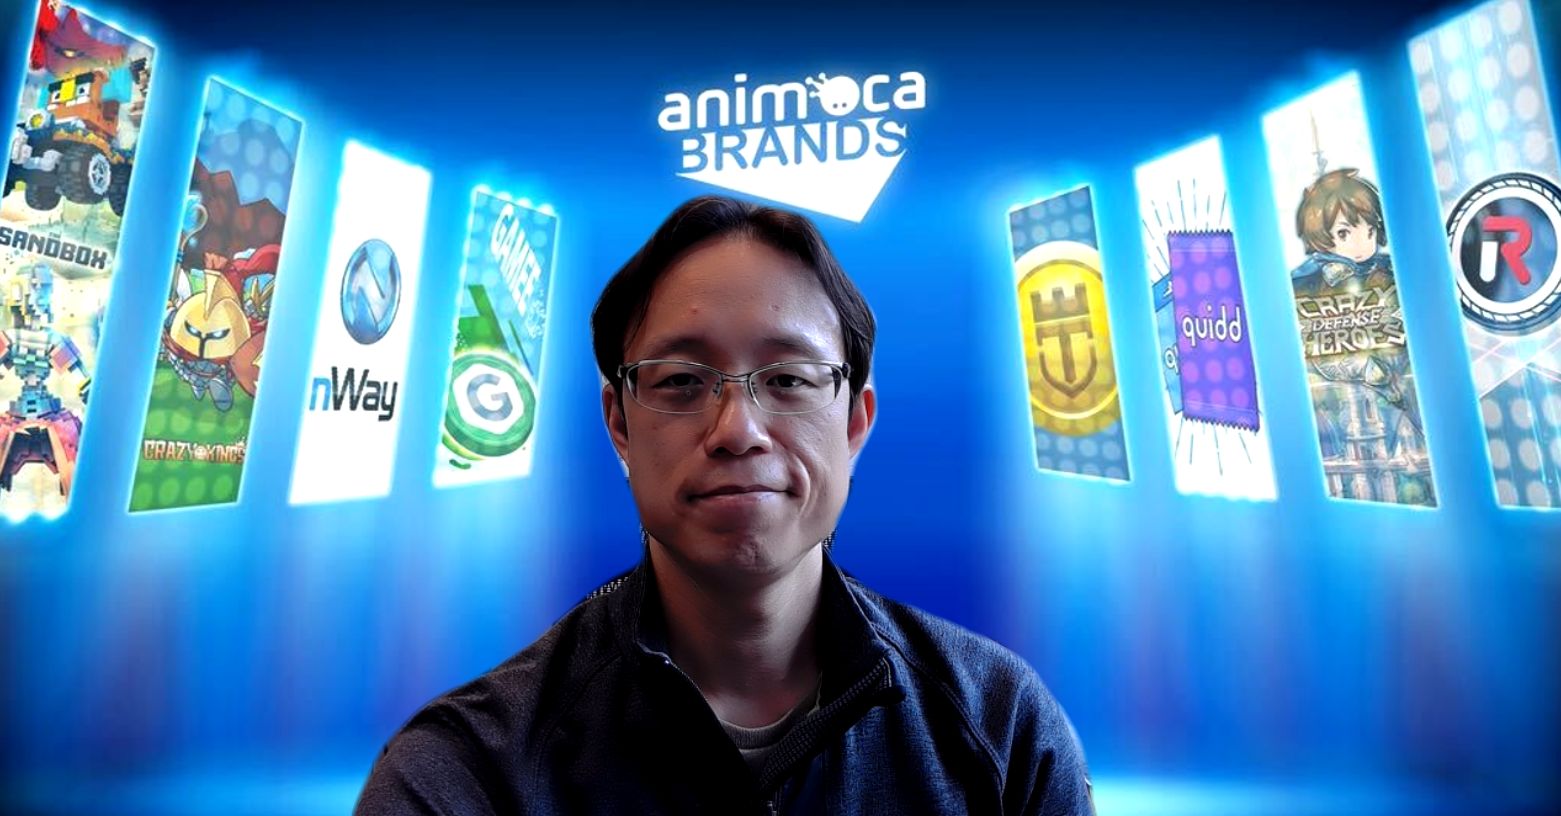 Animoca Brands teamshot with Yat Siu_.jpg